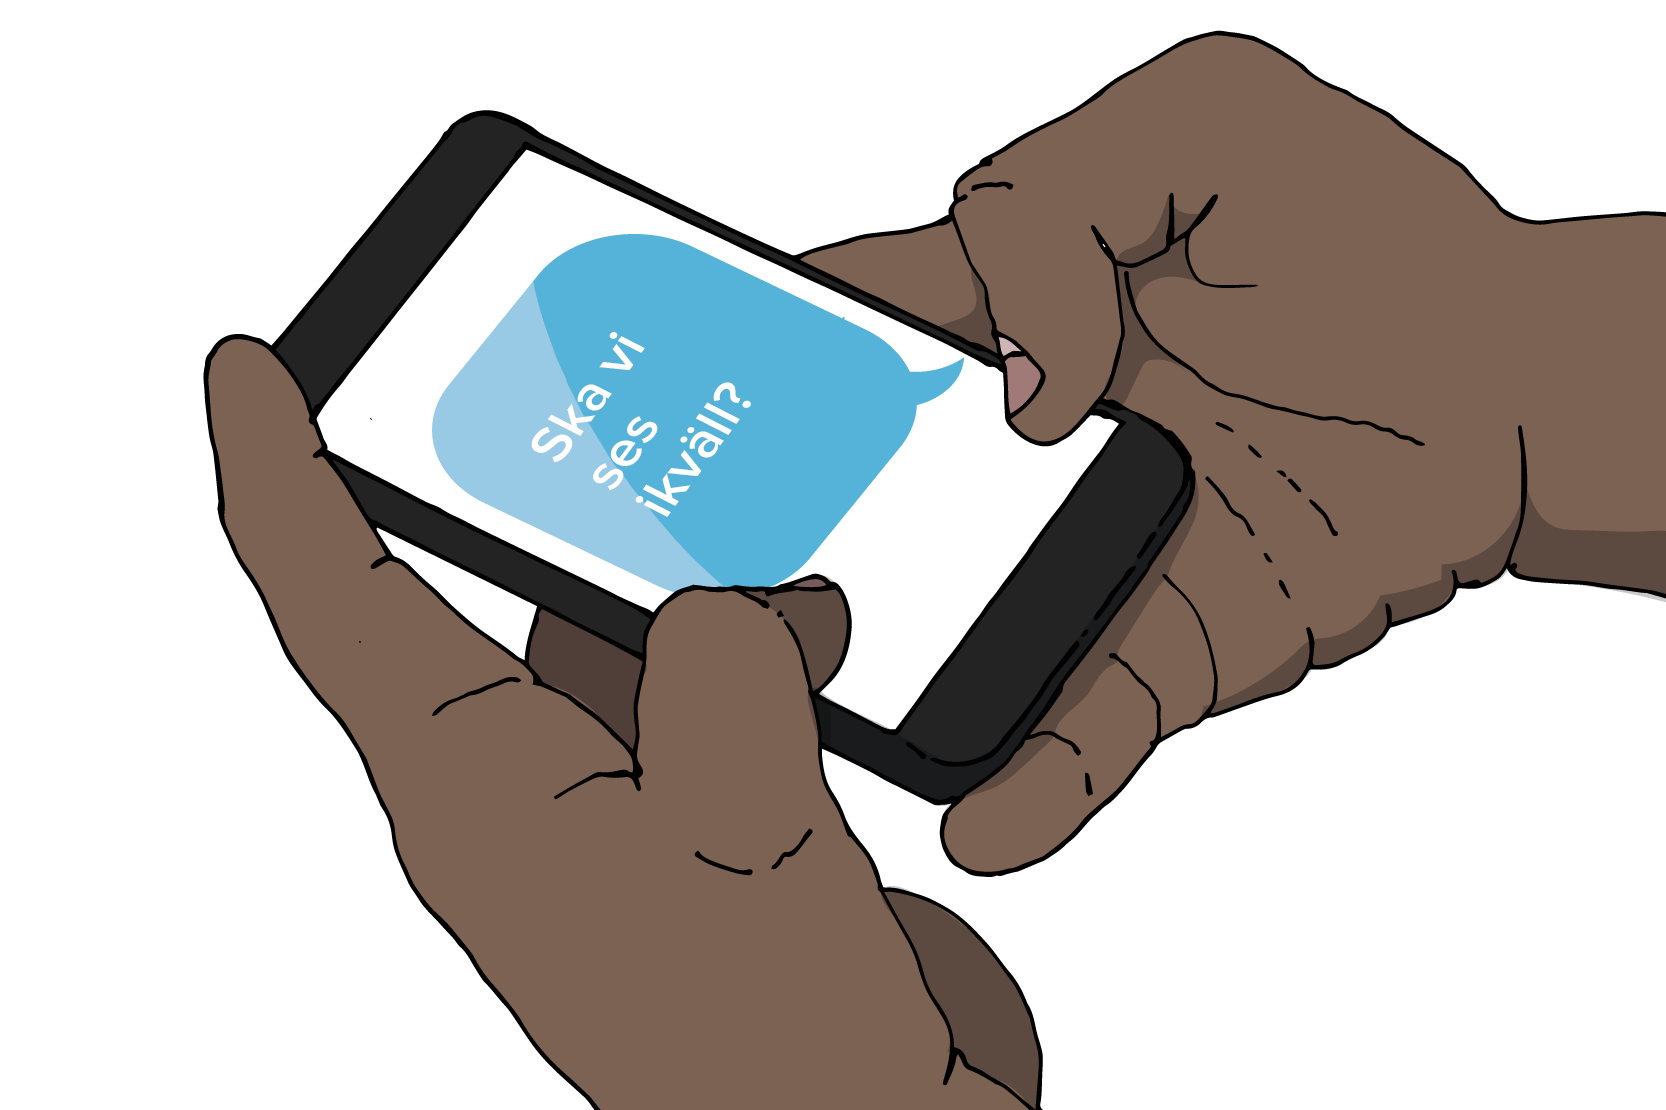 Händer som håller en mobil med ett meddelande där det står "Ska vi ses ikväll?". Illustration.